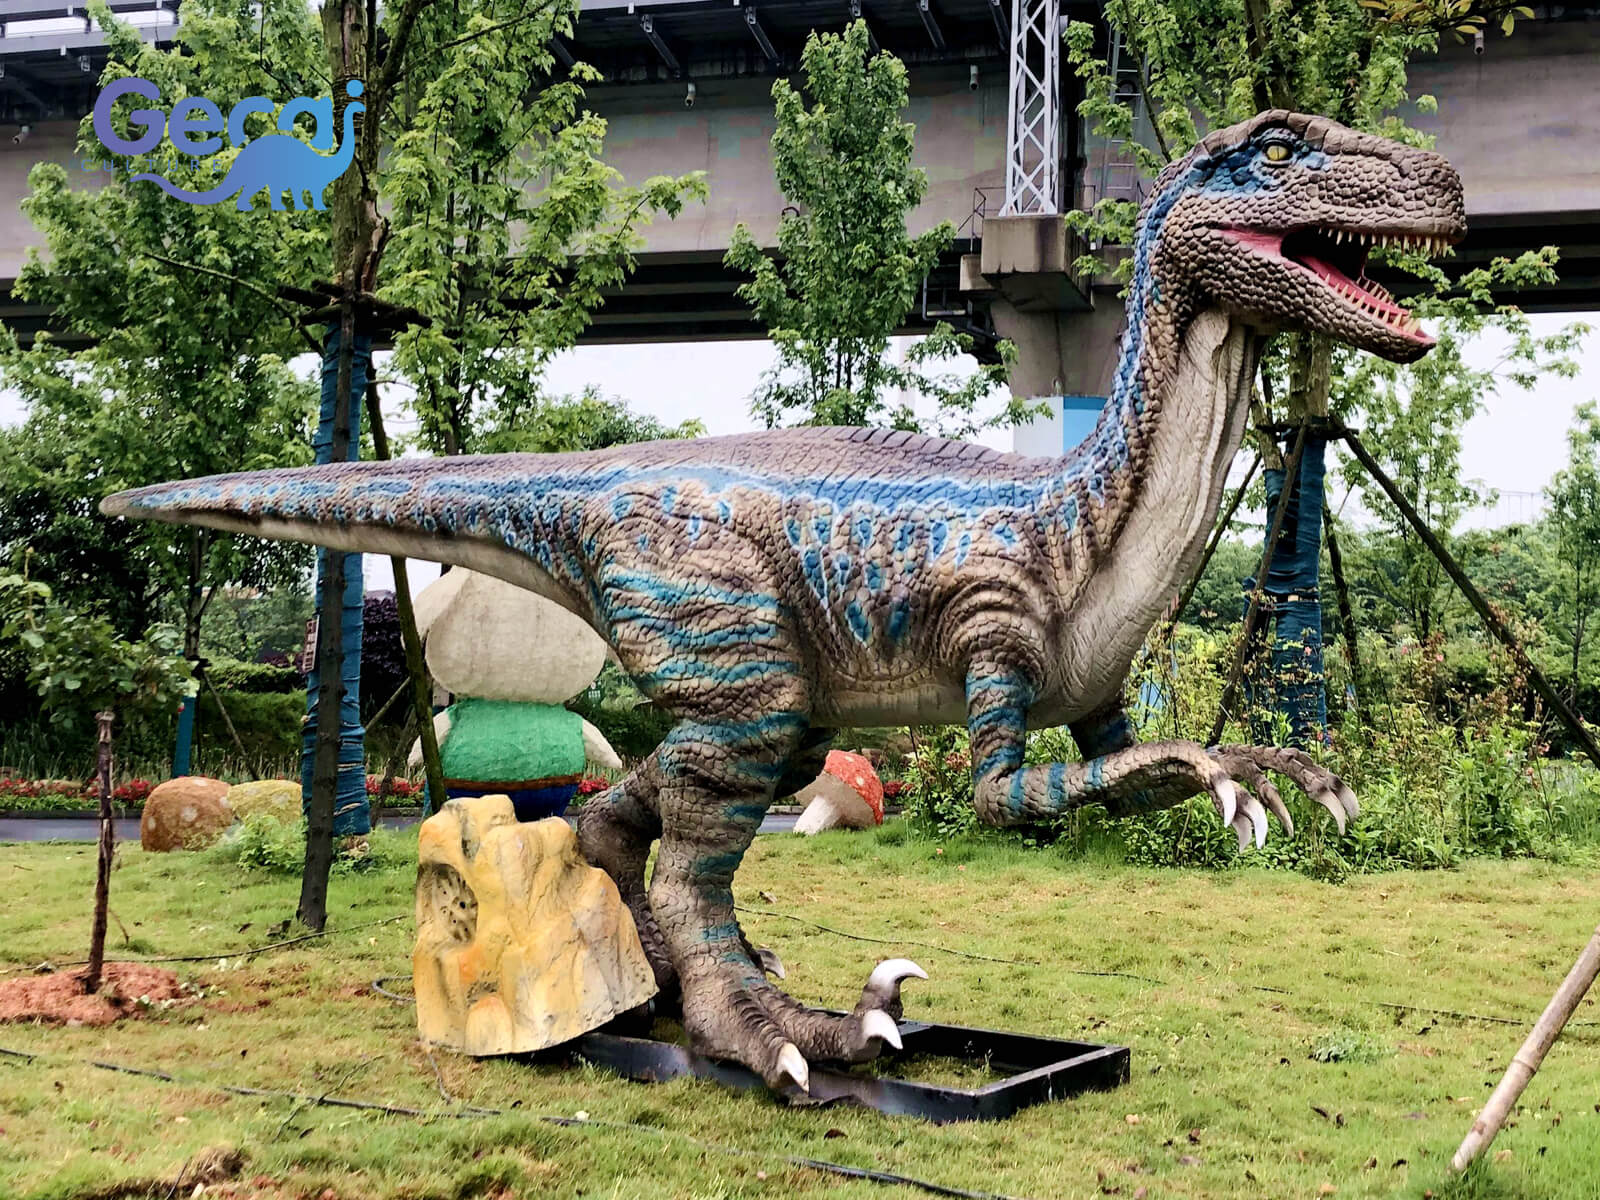 Jurassic Baby Velociraptor Statue for Park